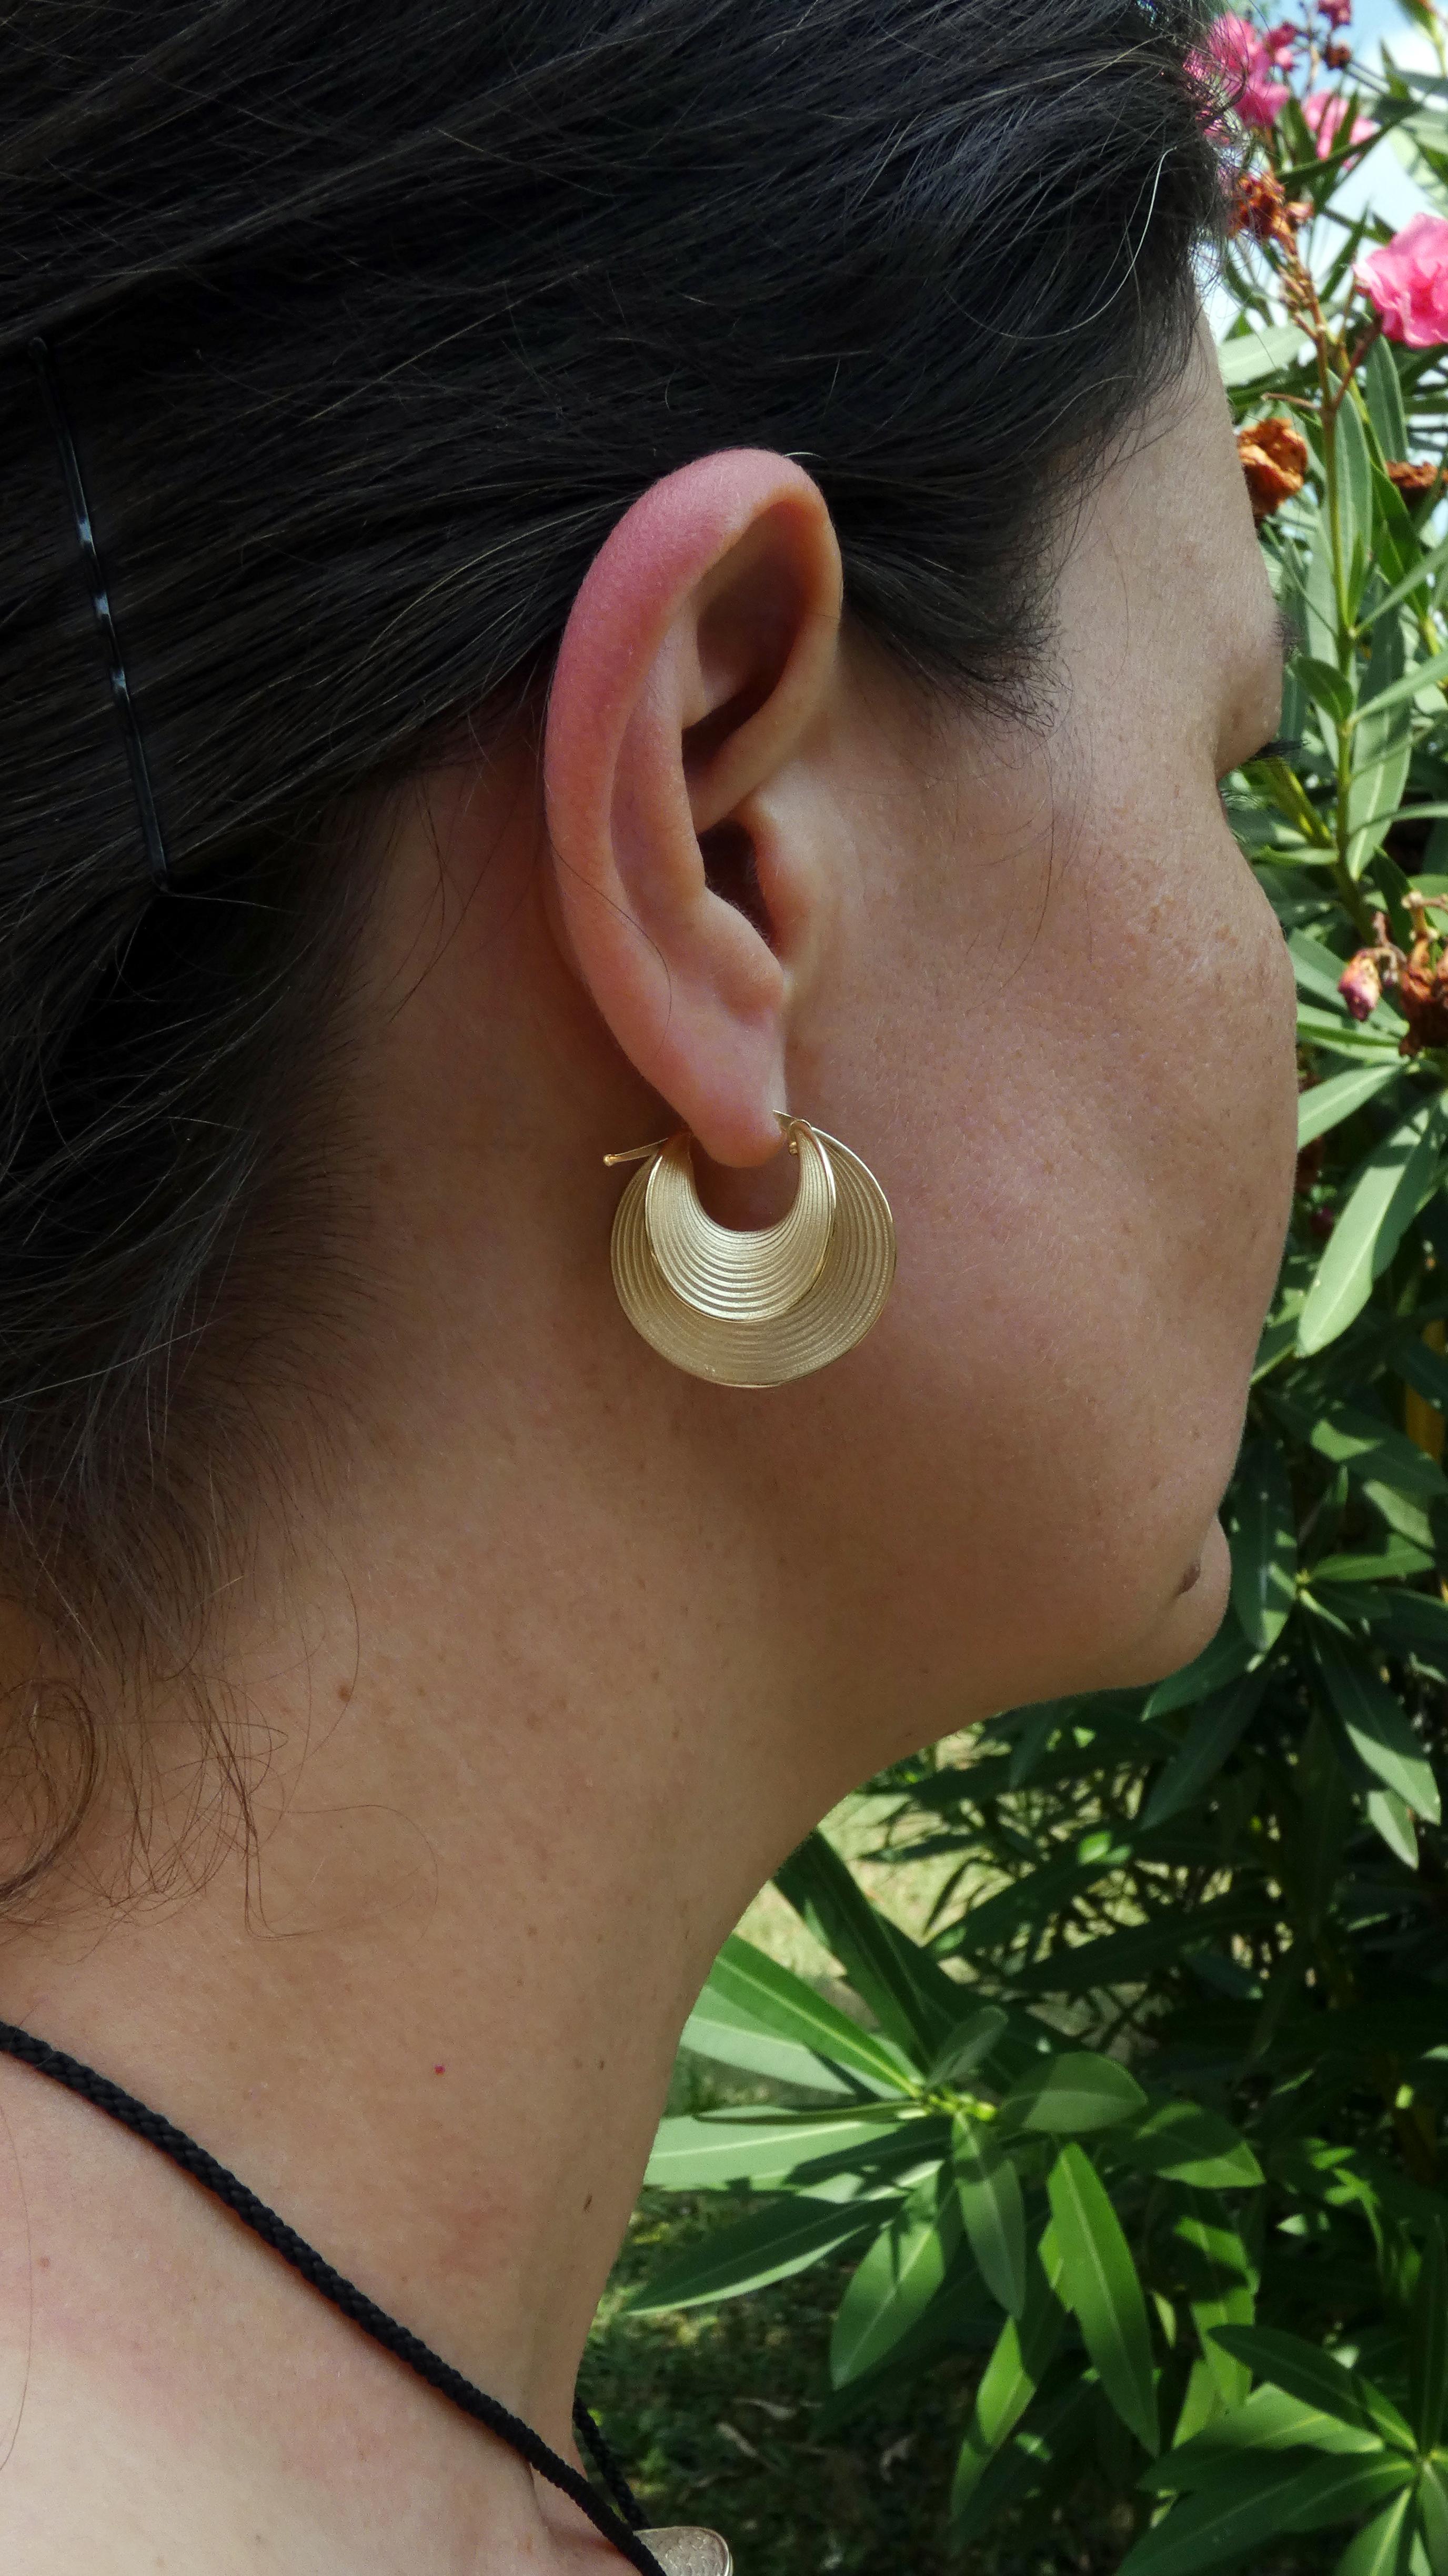 who invented hoop earrings